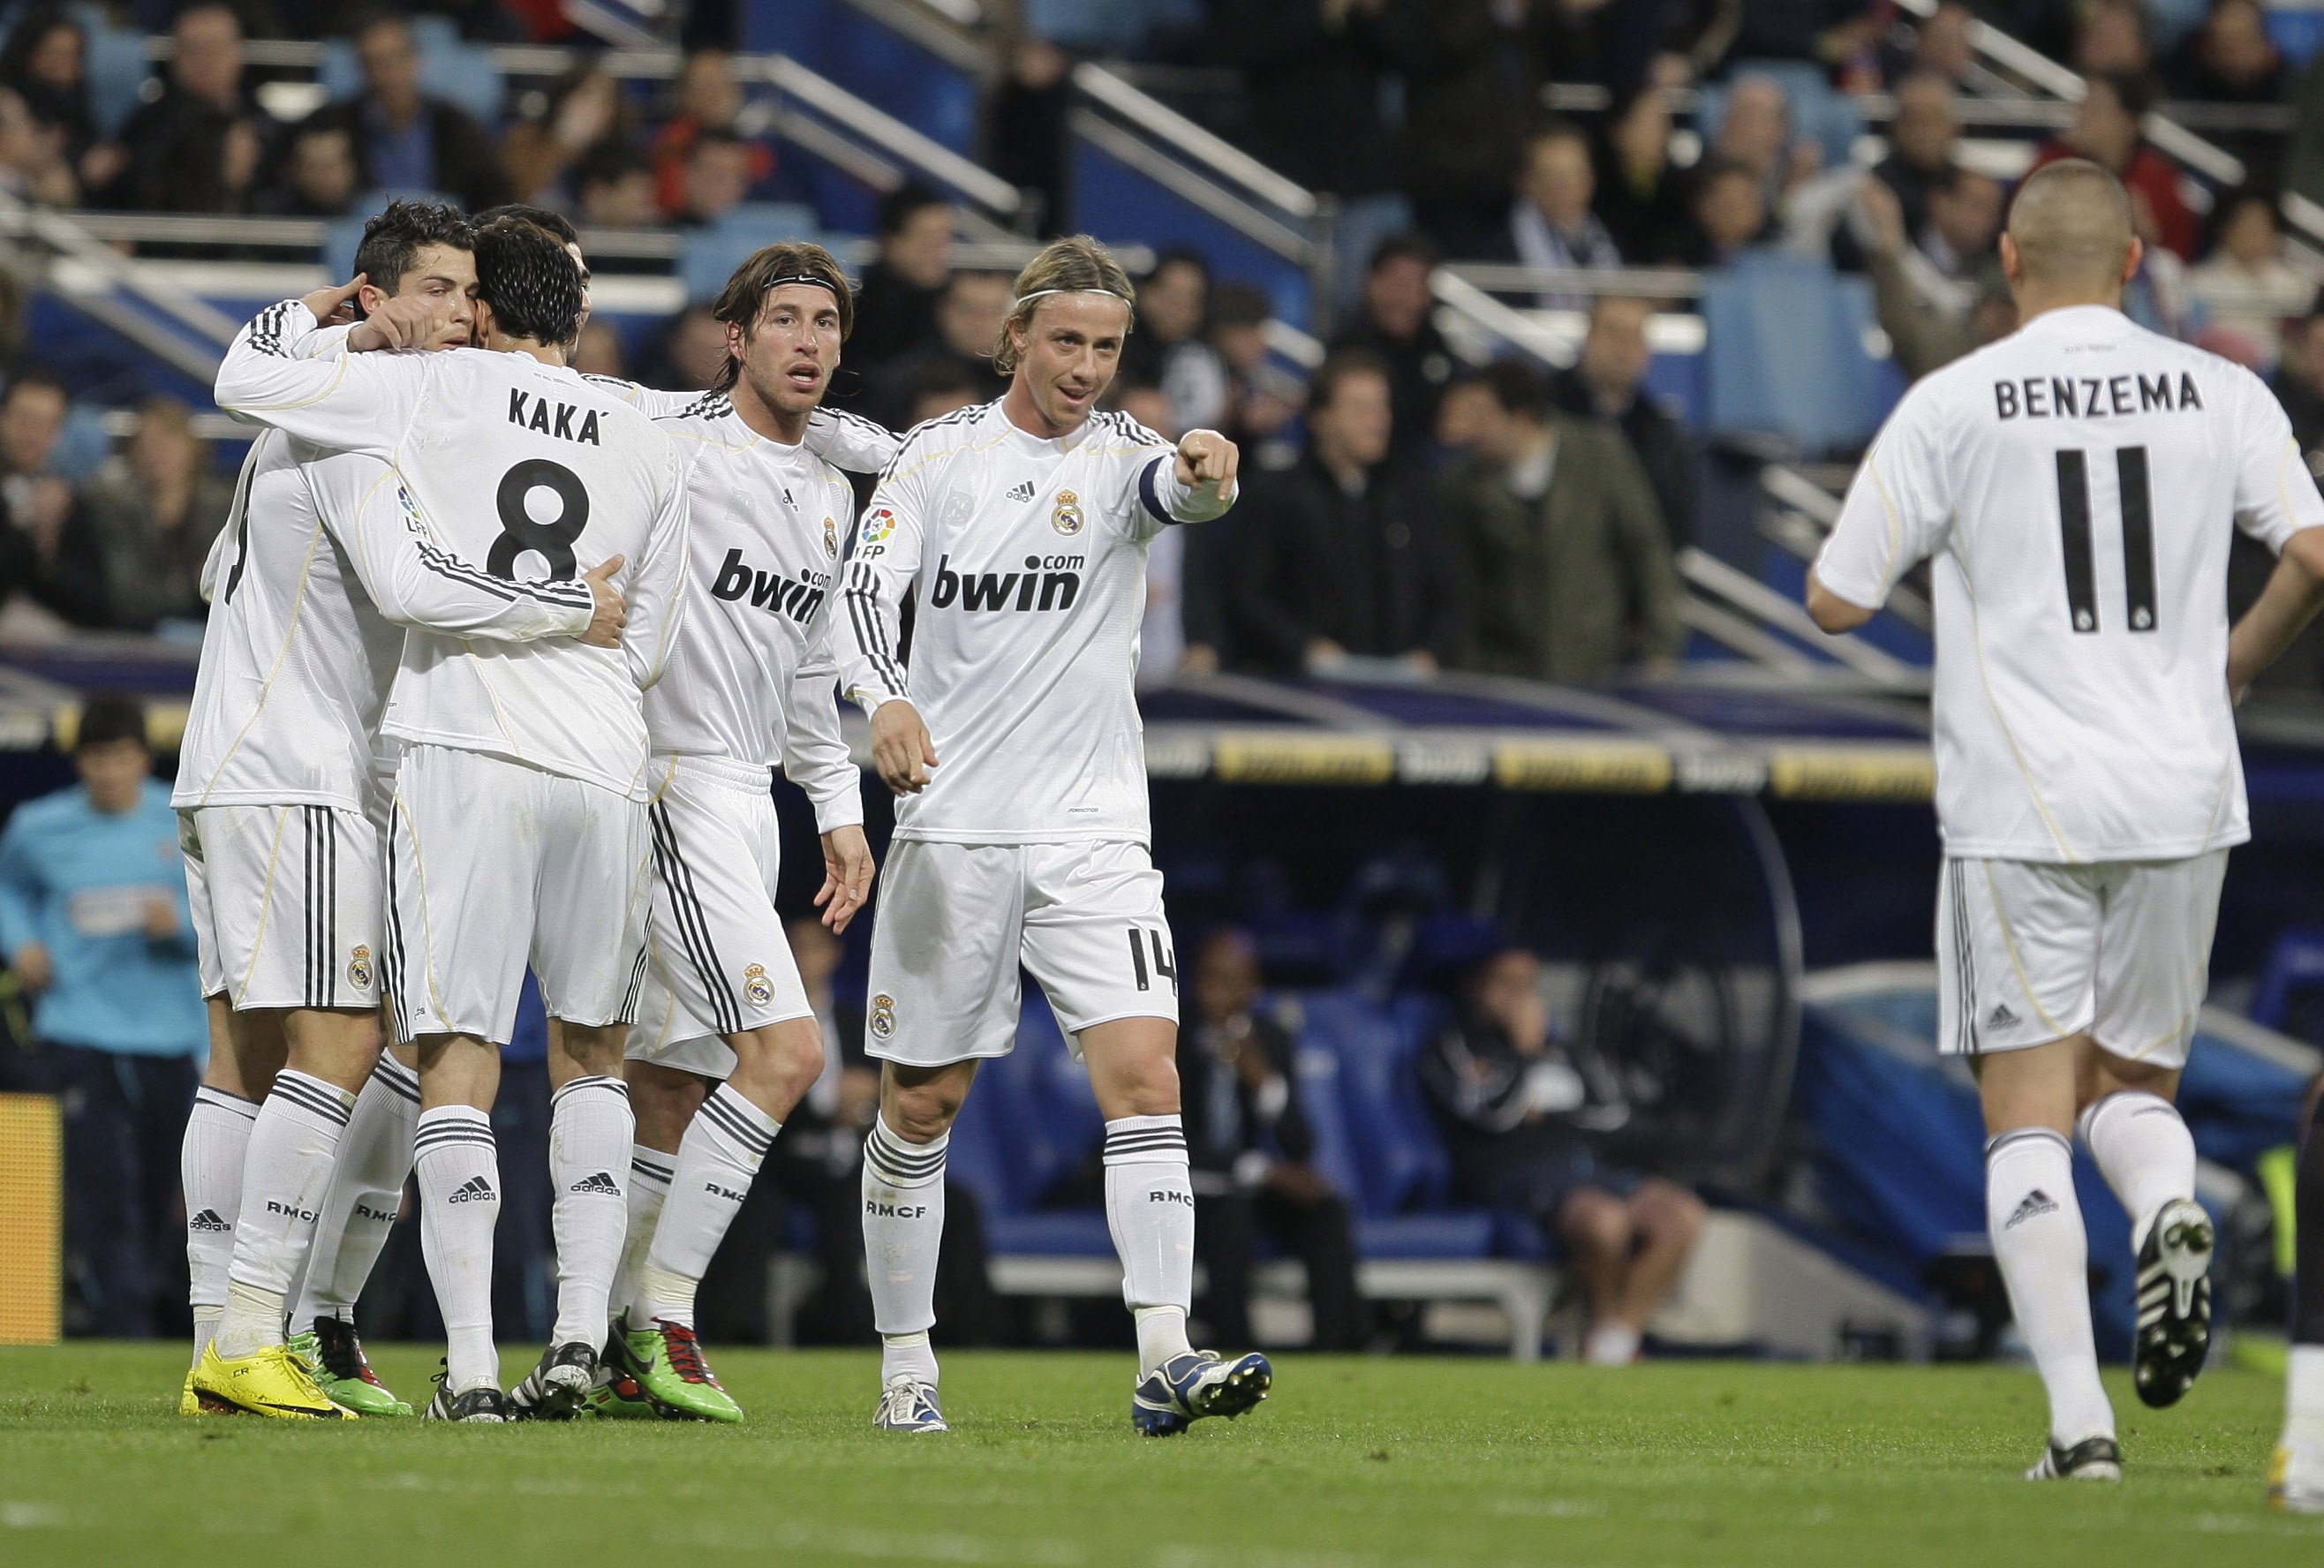 Real Madrid, Malaga, La Liga, Patrick Mtiliga, Cristiano Ronaldo